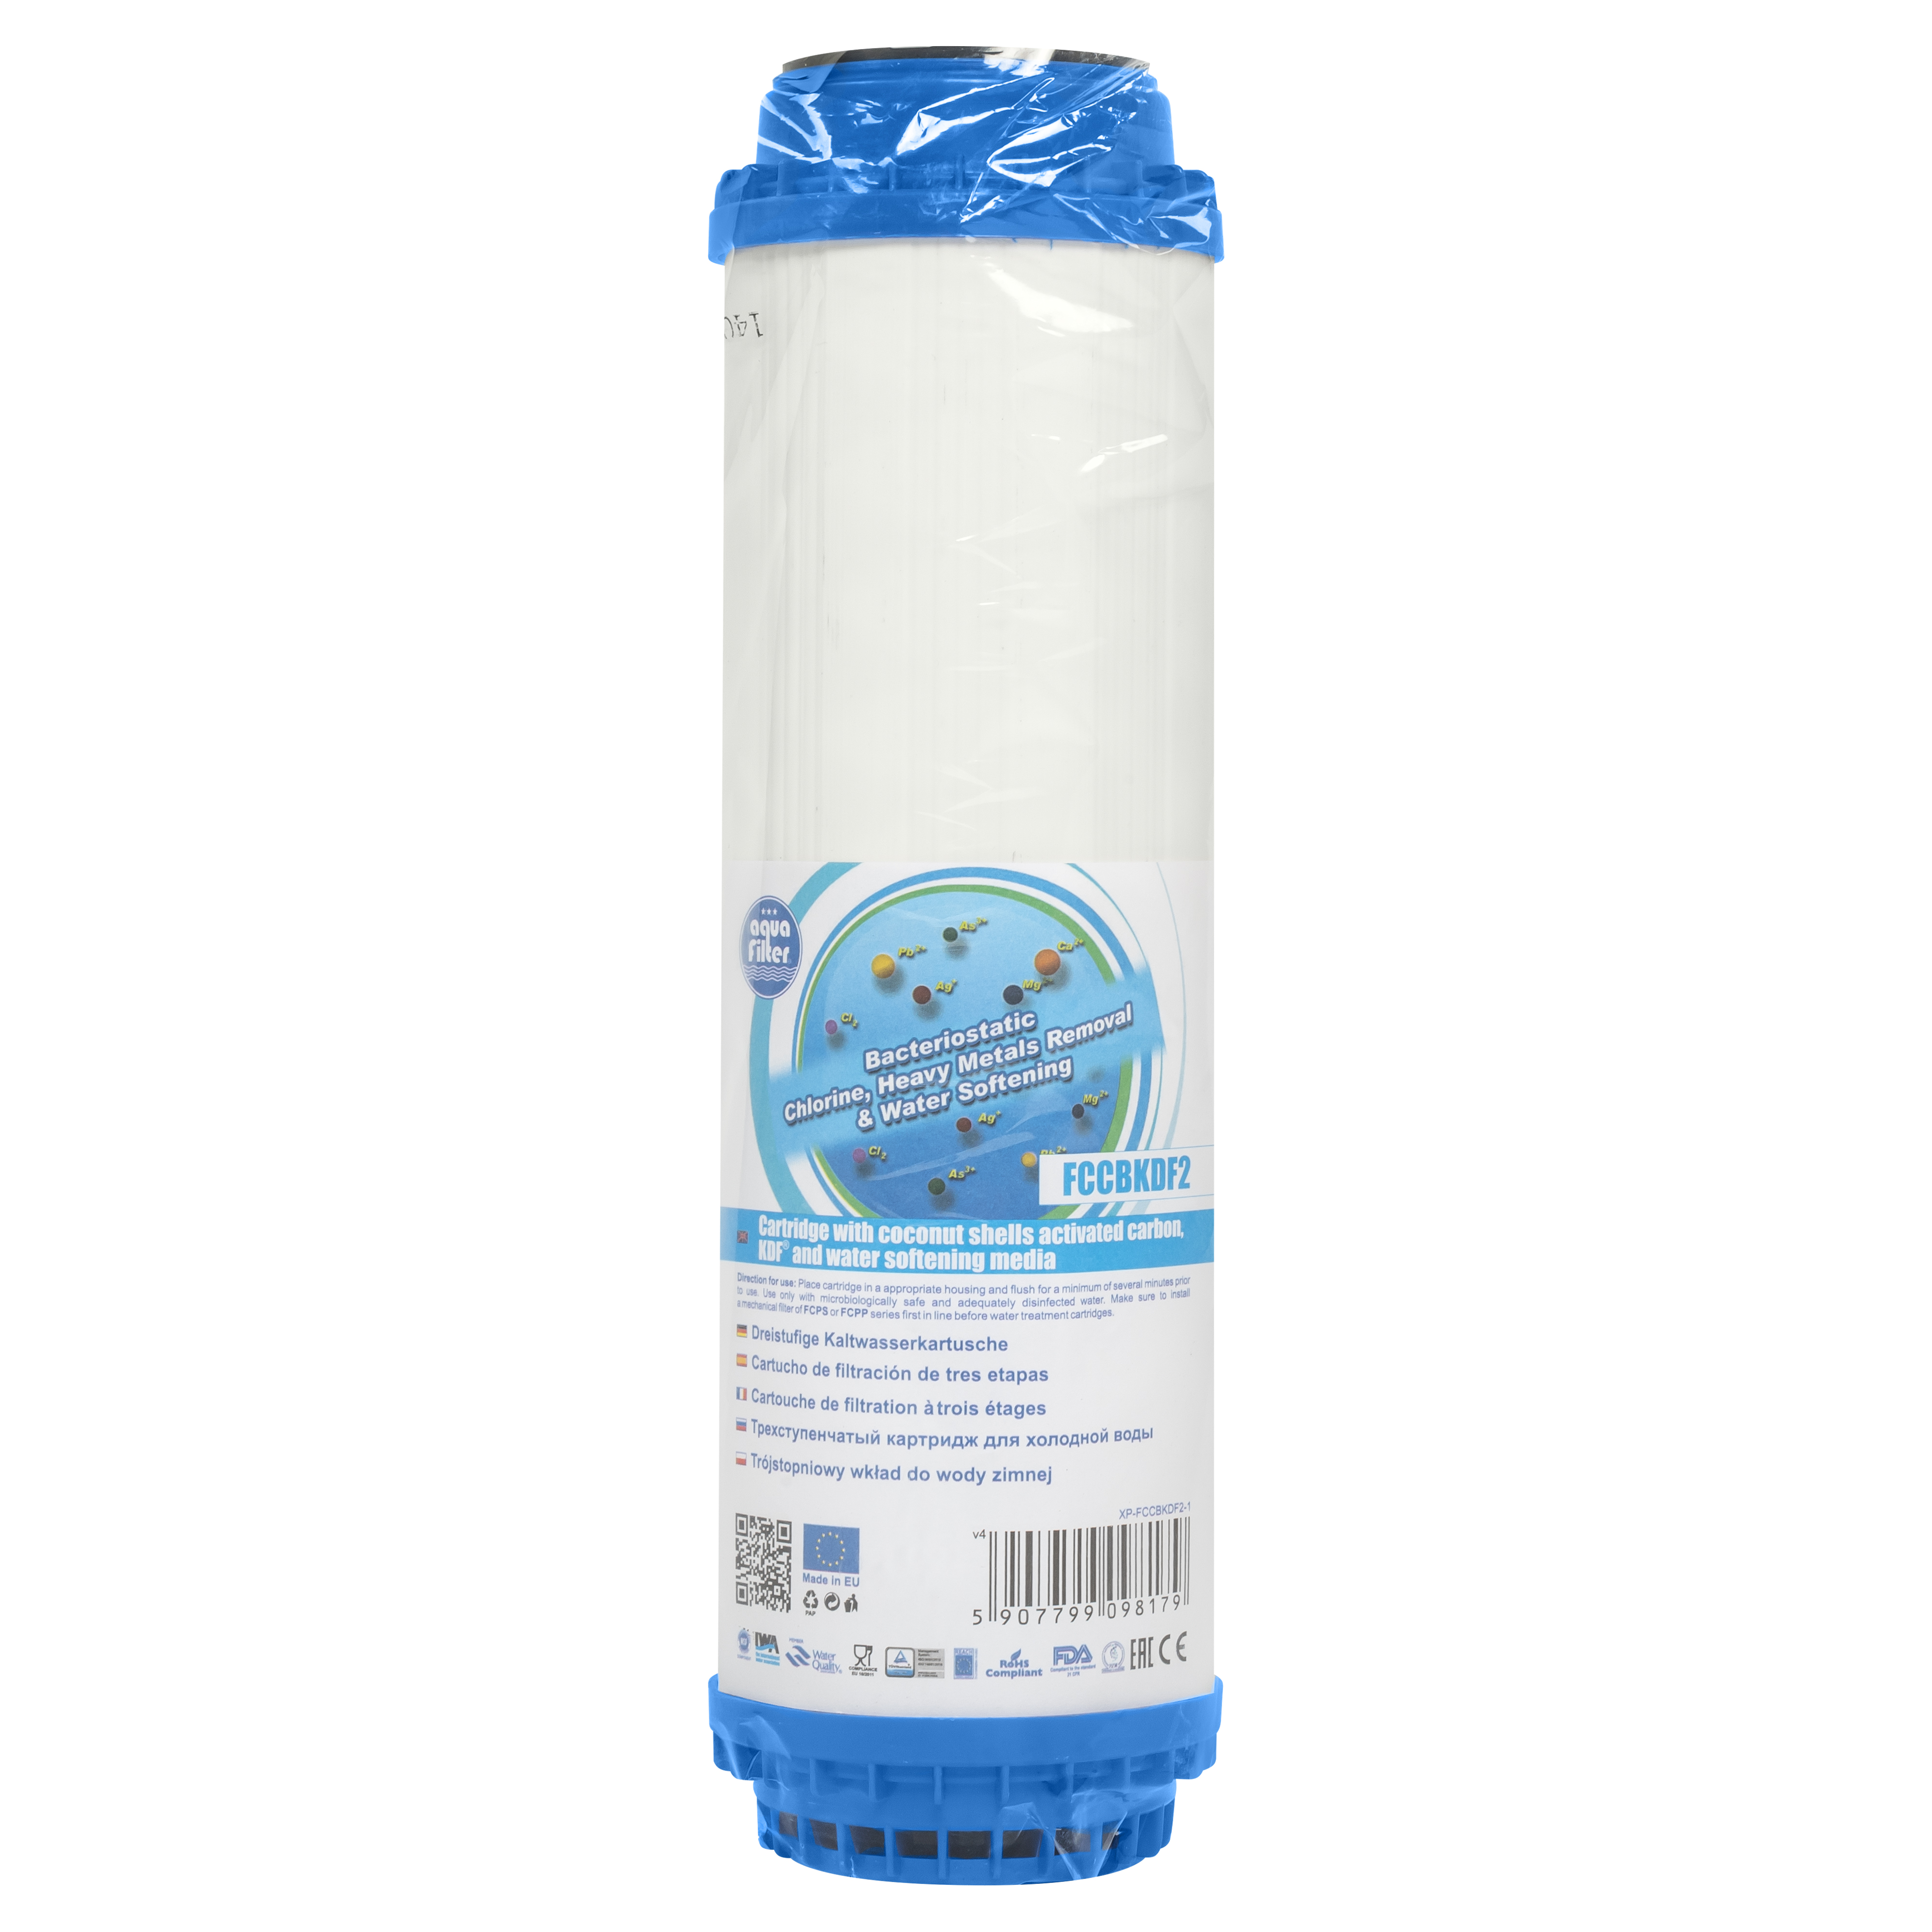 Картридж Aquafilter для холодної води Aquafilter FCCBKDF2 (вугілля) 